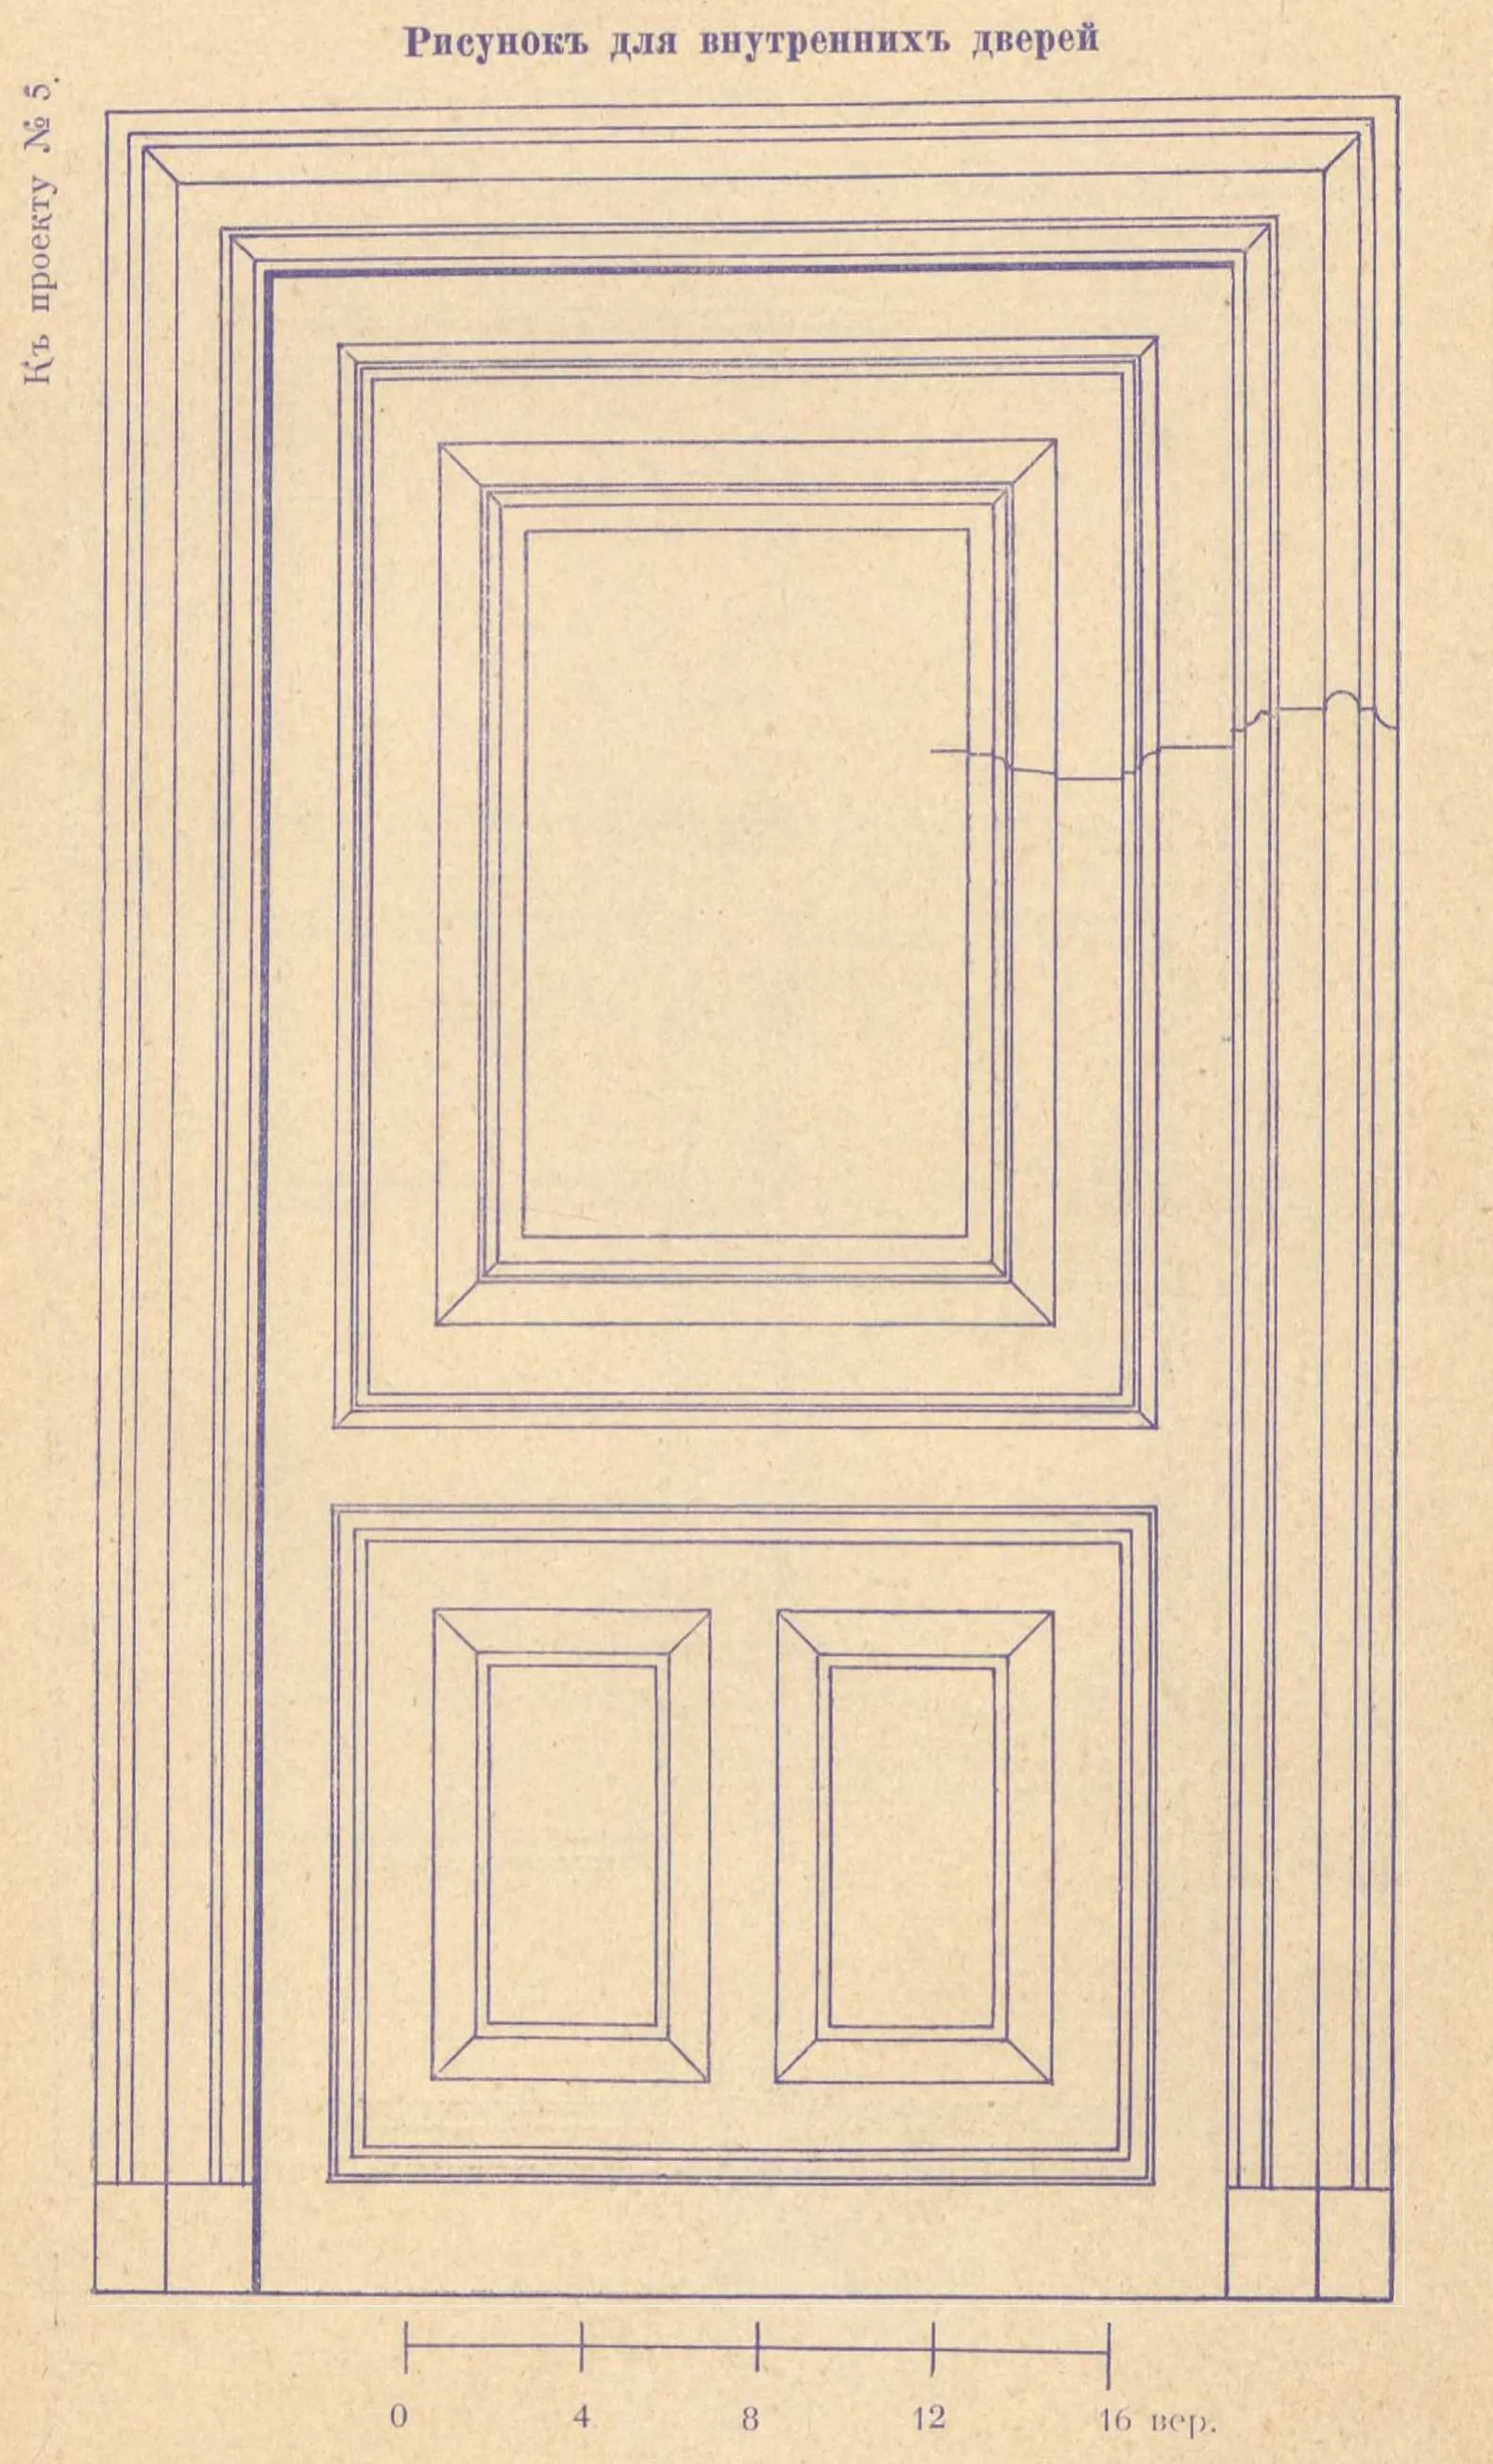 К проекту № 5. Рисунок для внутренних дверей